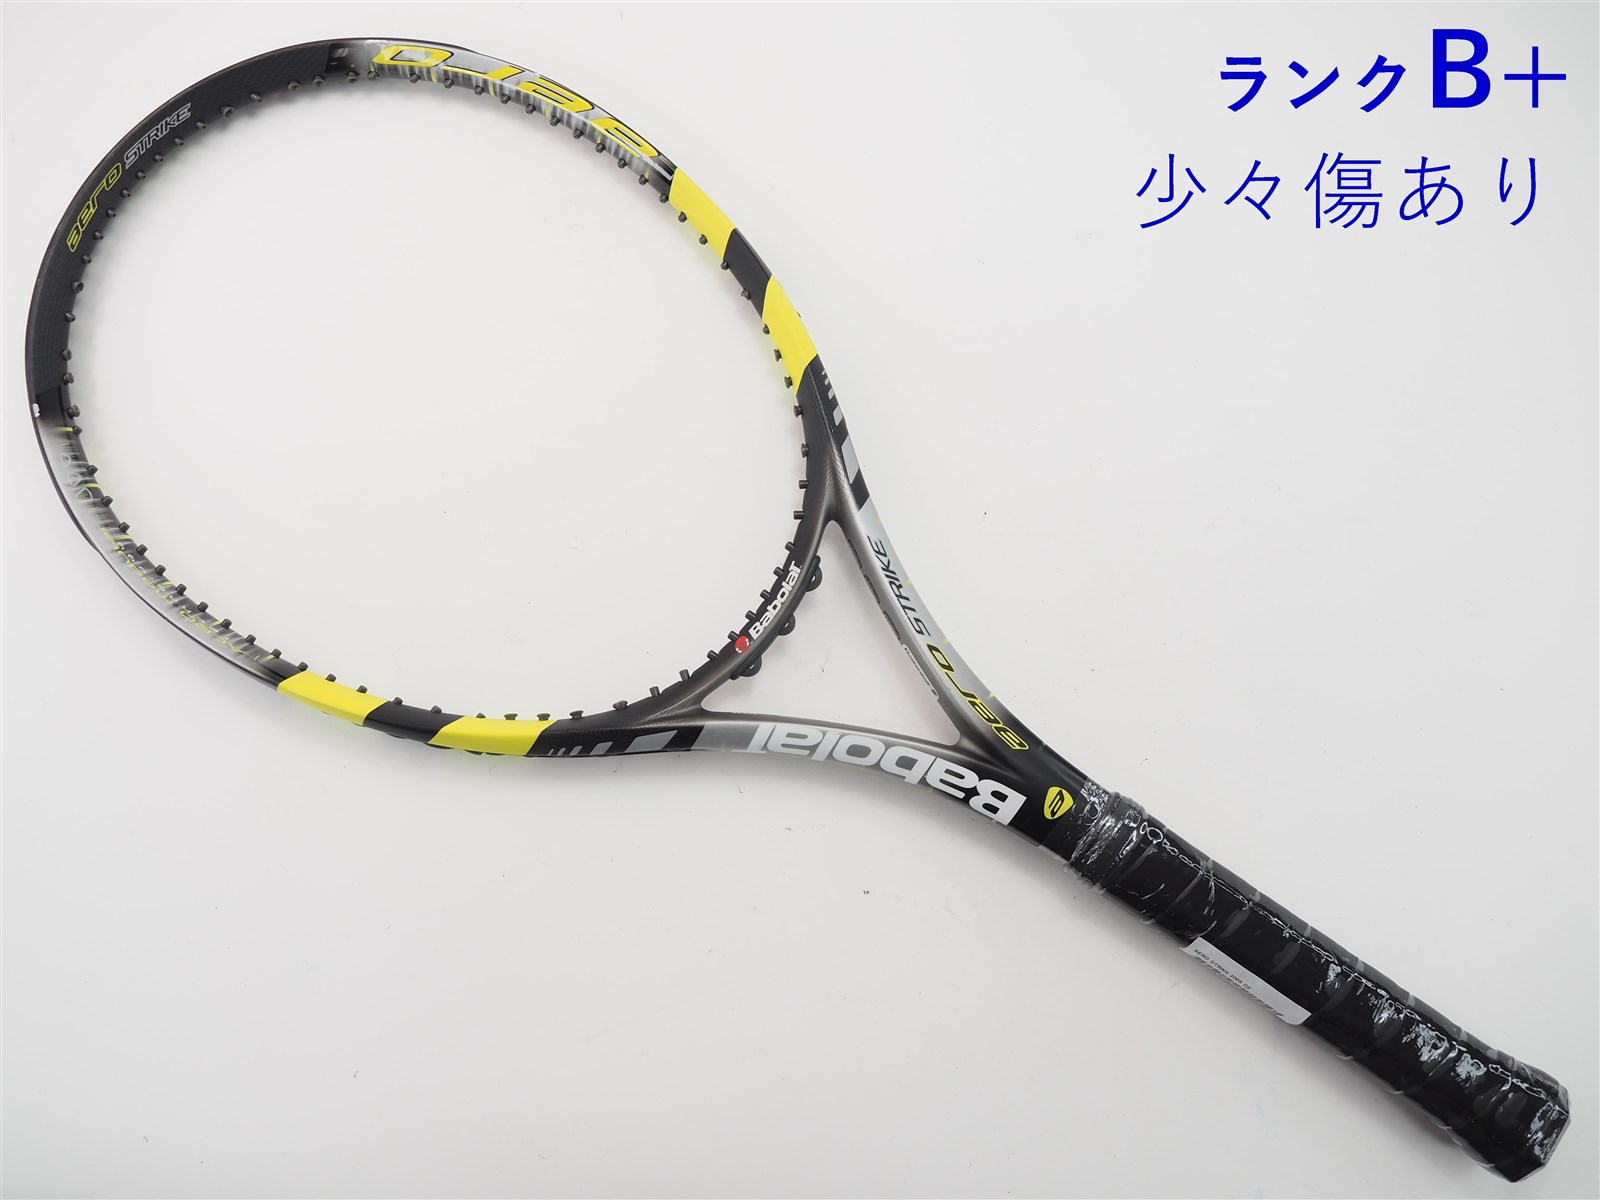 ☆激レア美品☆バボラ 硬式 テニスラケット アエロツアープラス 97 G2 